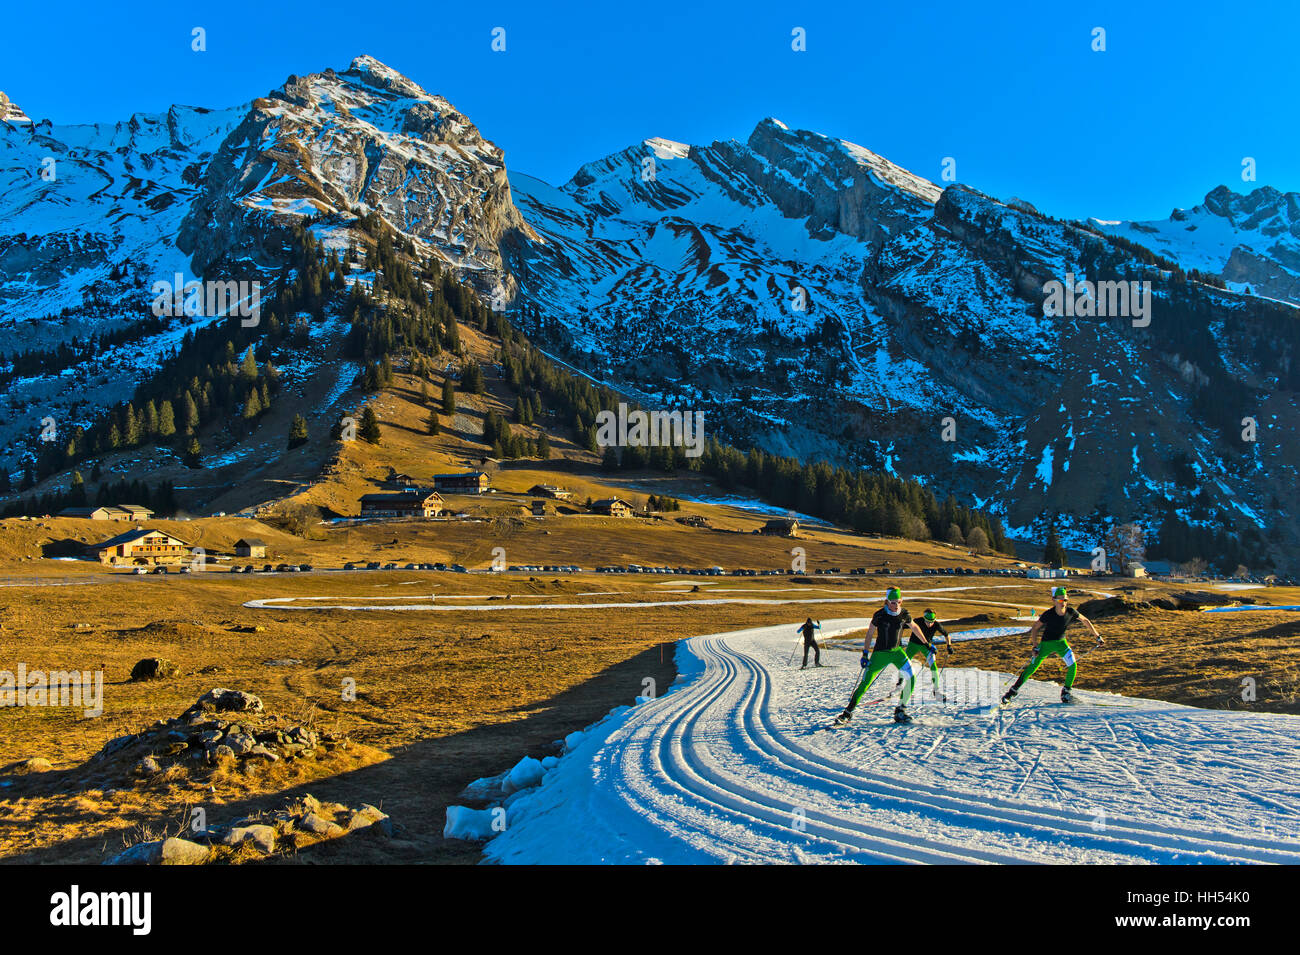 Des skieurs de pratiquer sur pistes de ski de neige artificielle, l'espace nordique des Confins à La Clusaz, France Banque D'Images